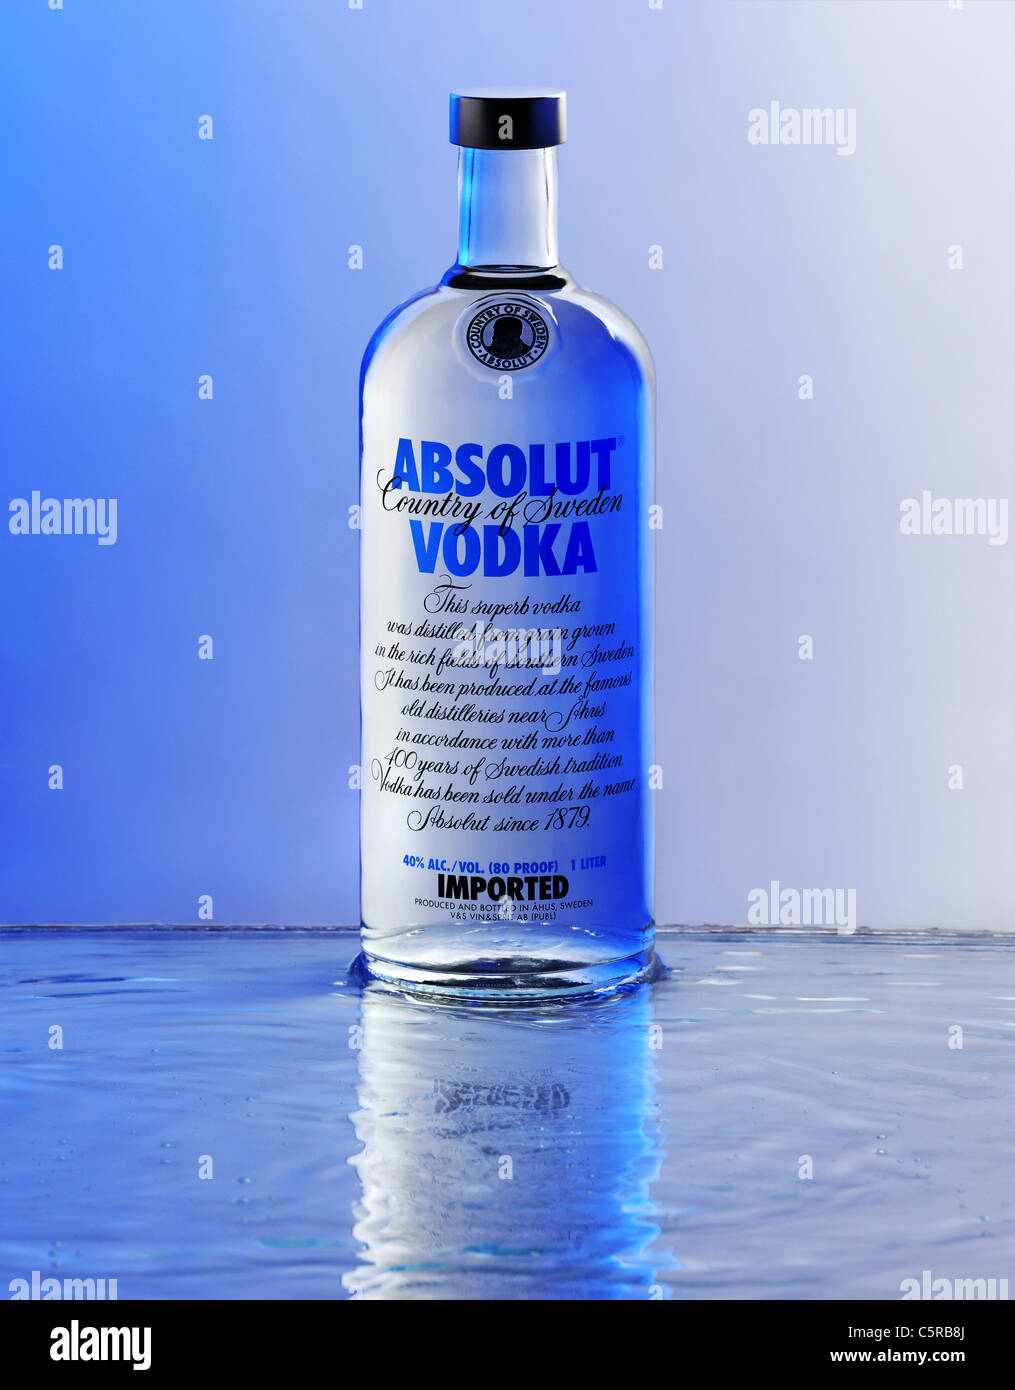 Absolut vodka bottle -Fotos und -Bildmaterial in hoher Auflösung – Alamy